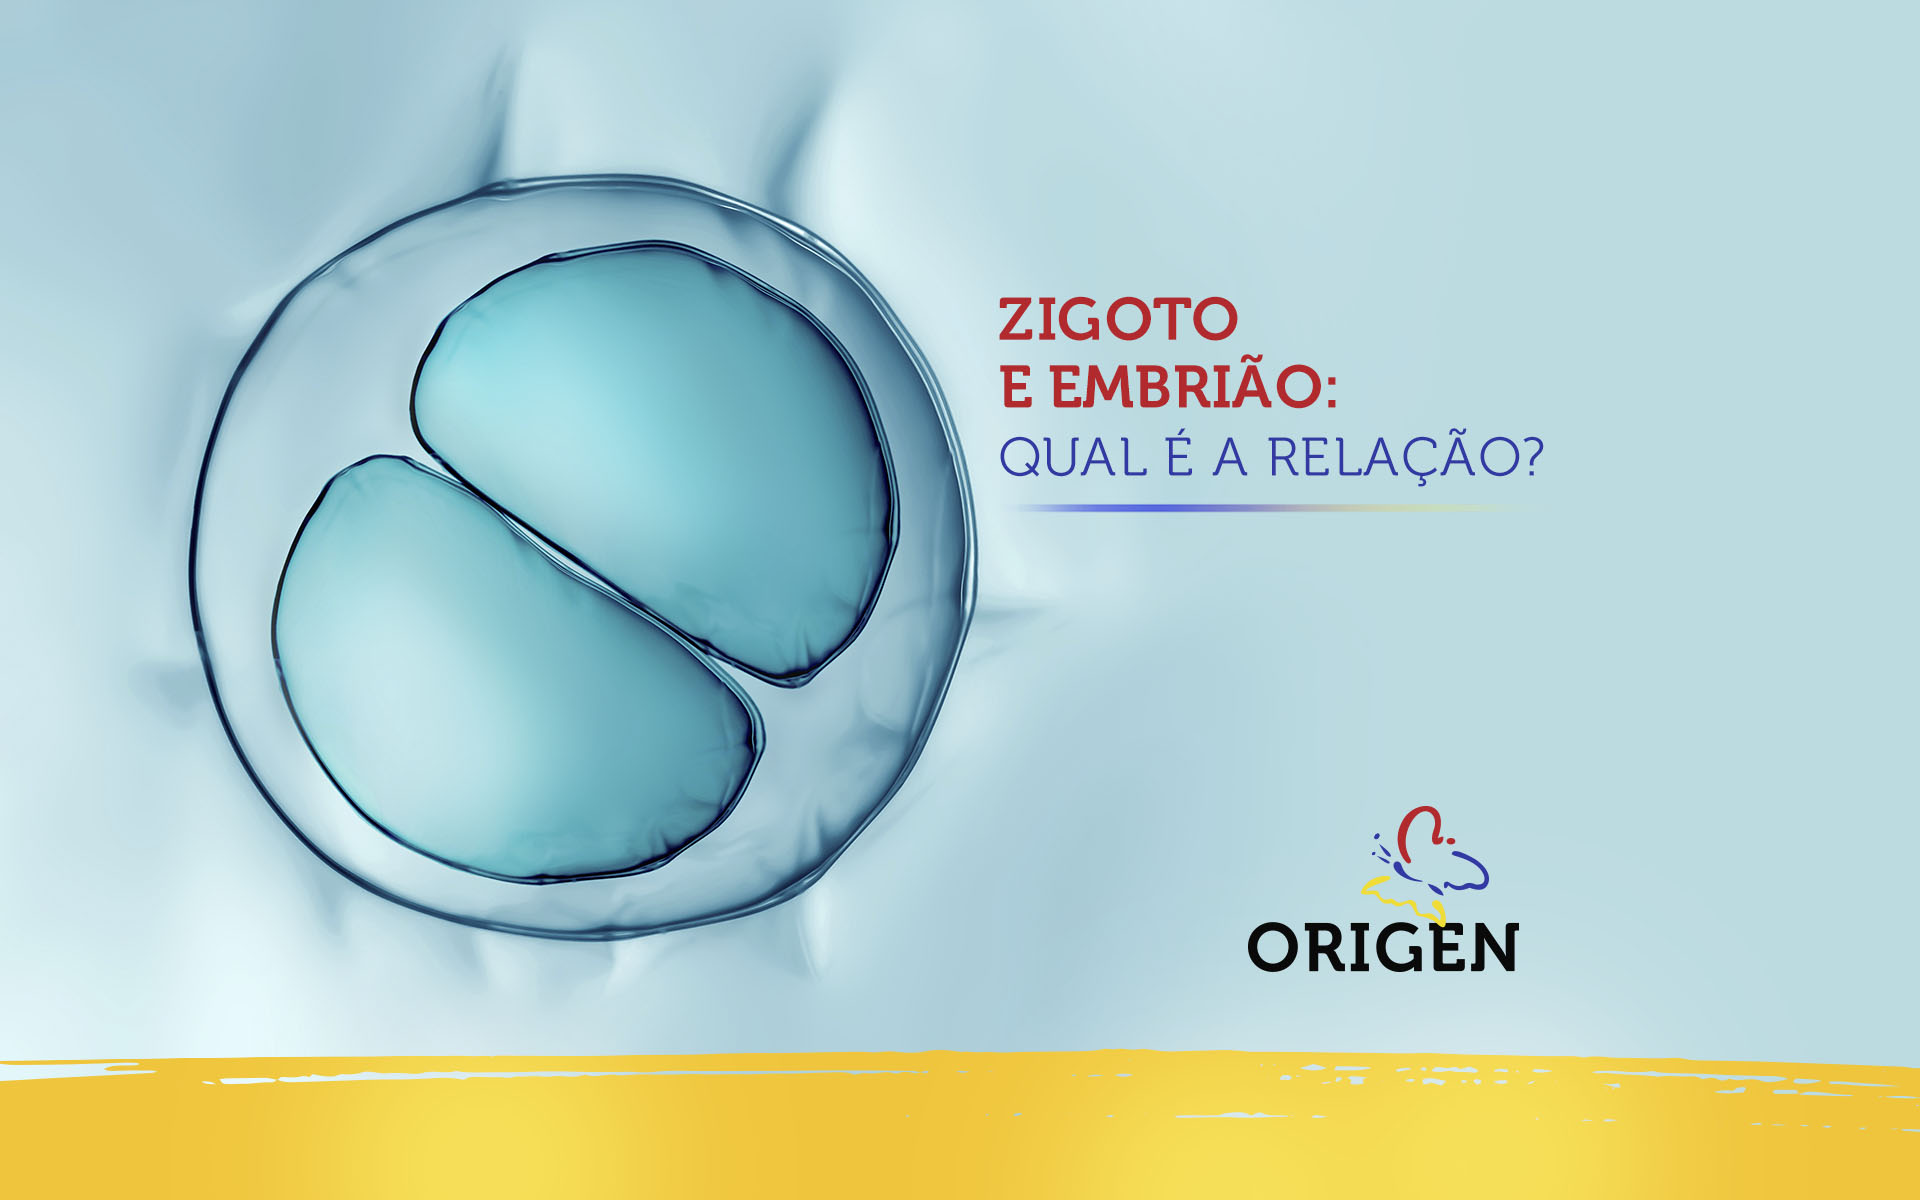 Zigoto e embrião: qual é a relação?